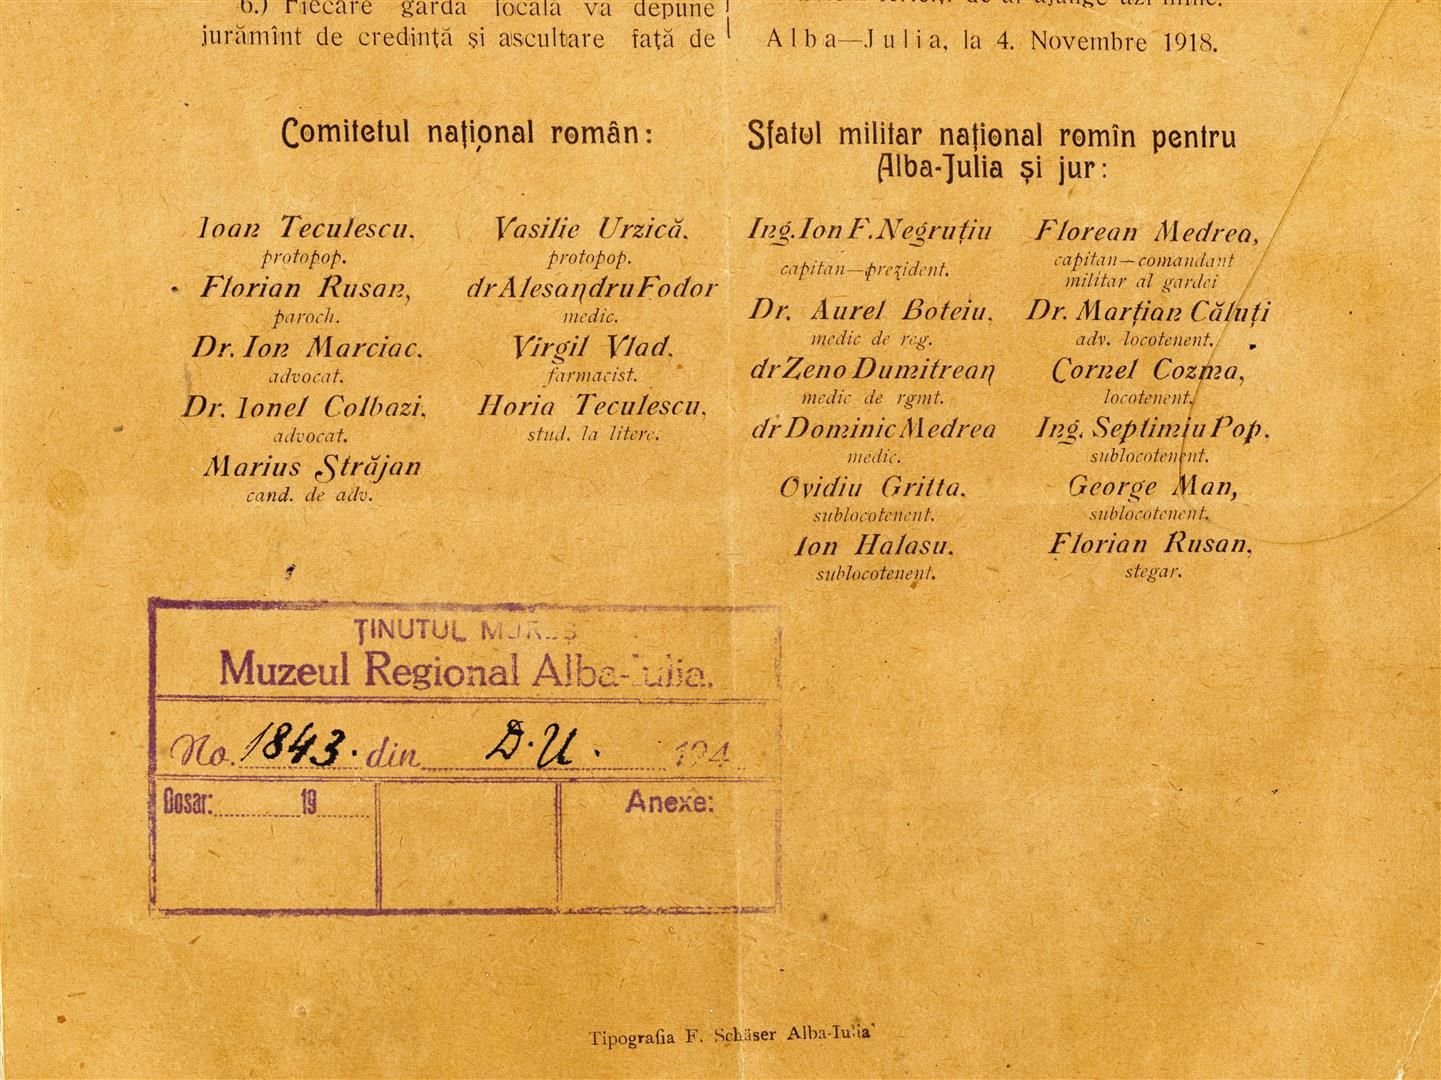 Manifest din noiembrie 1918, cuprinzând listele membrilor Consiliului Național Român din Alba Iulia și ai Sfatului Militar Național Român pentru Alba Iulia și Jur.